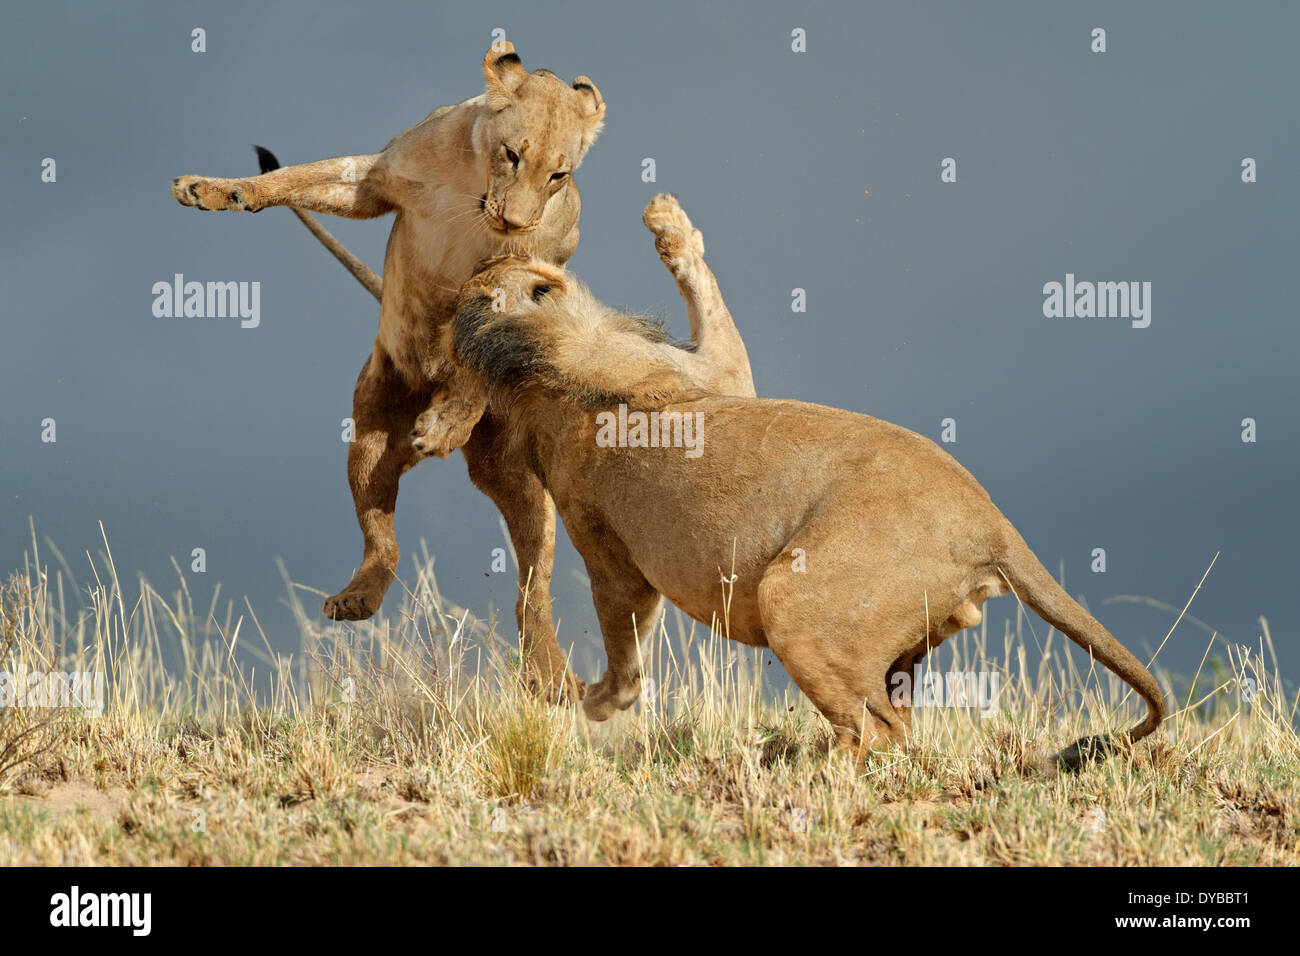 Playful young African lions (Panthera leo), Kalahari desert, South Africa Stock Photo